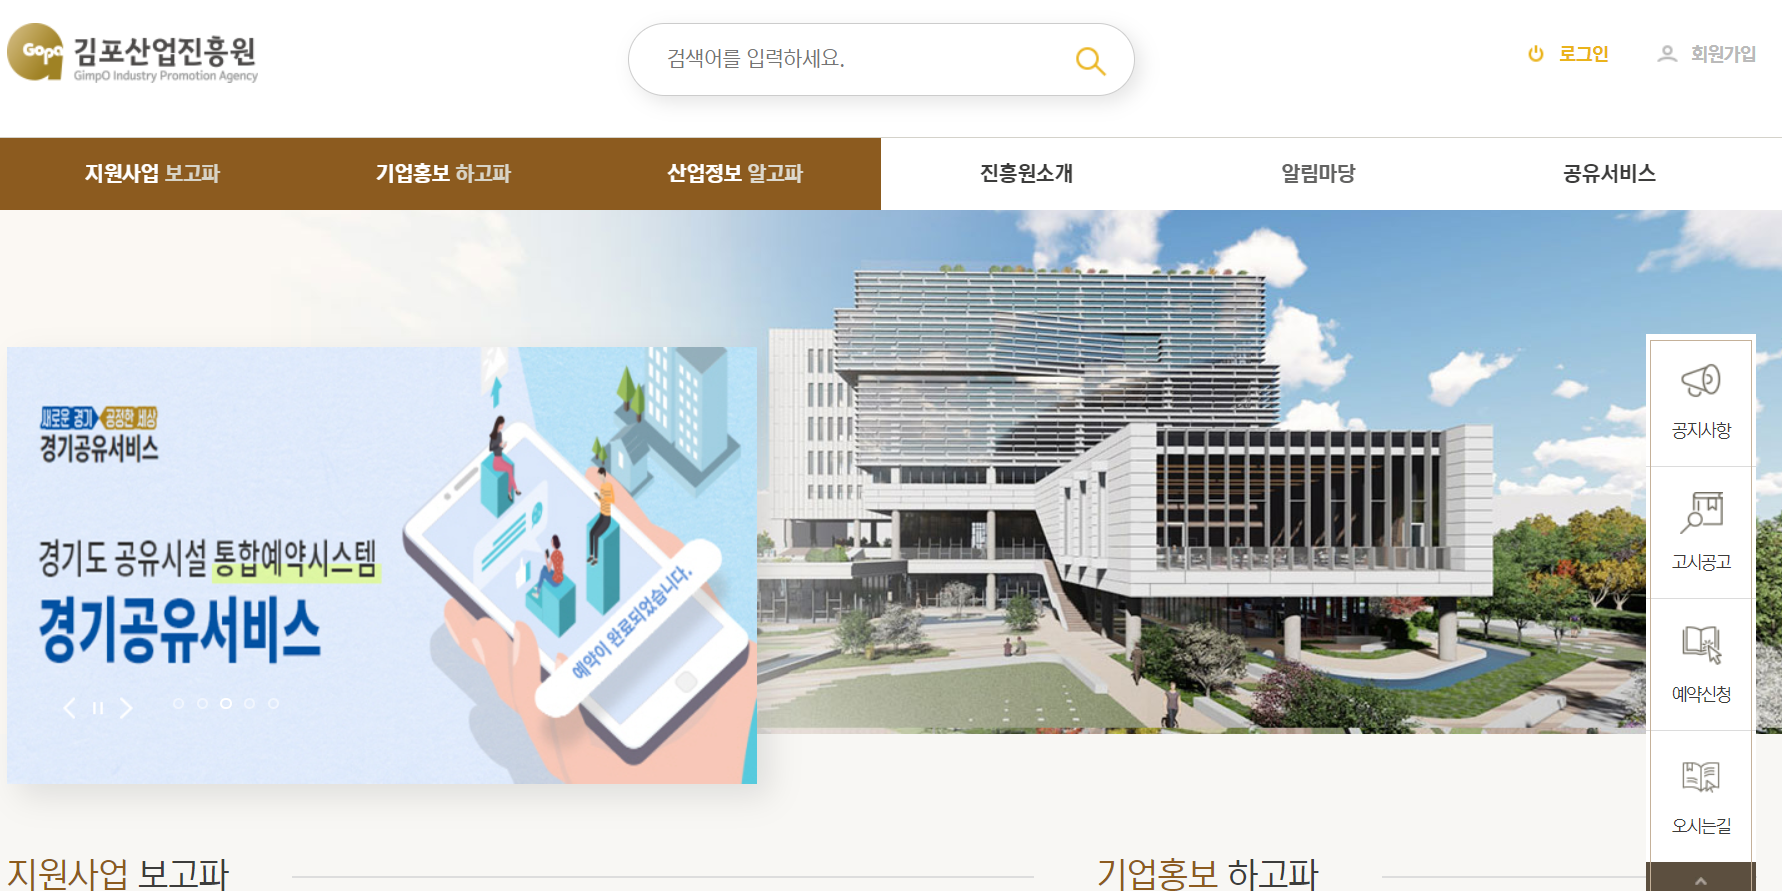 김포산업진흥원 홈페이지 화면